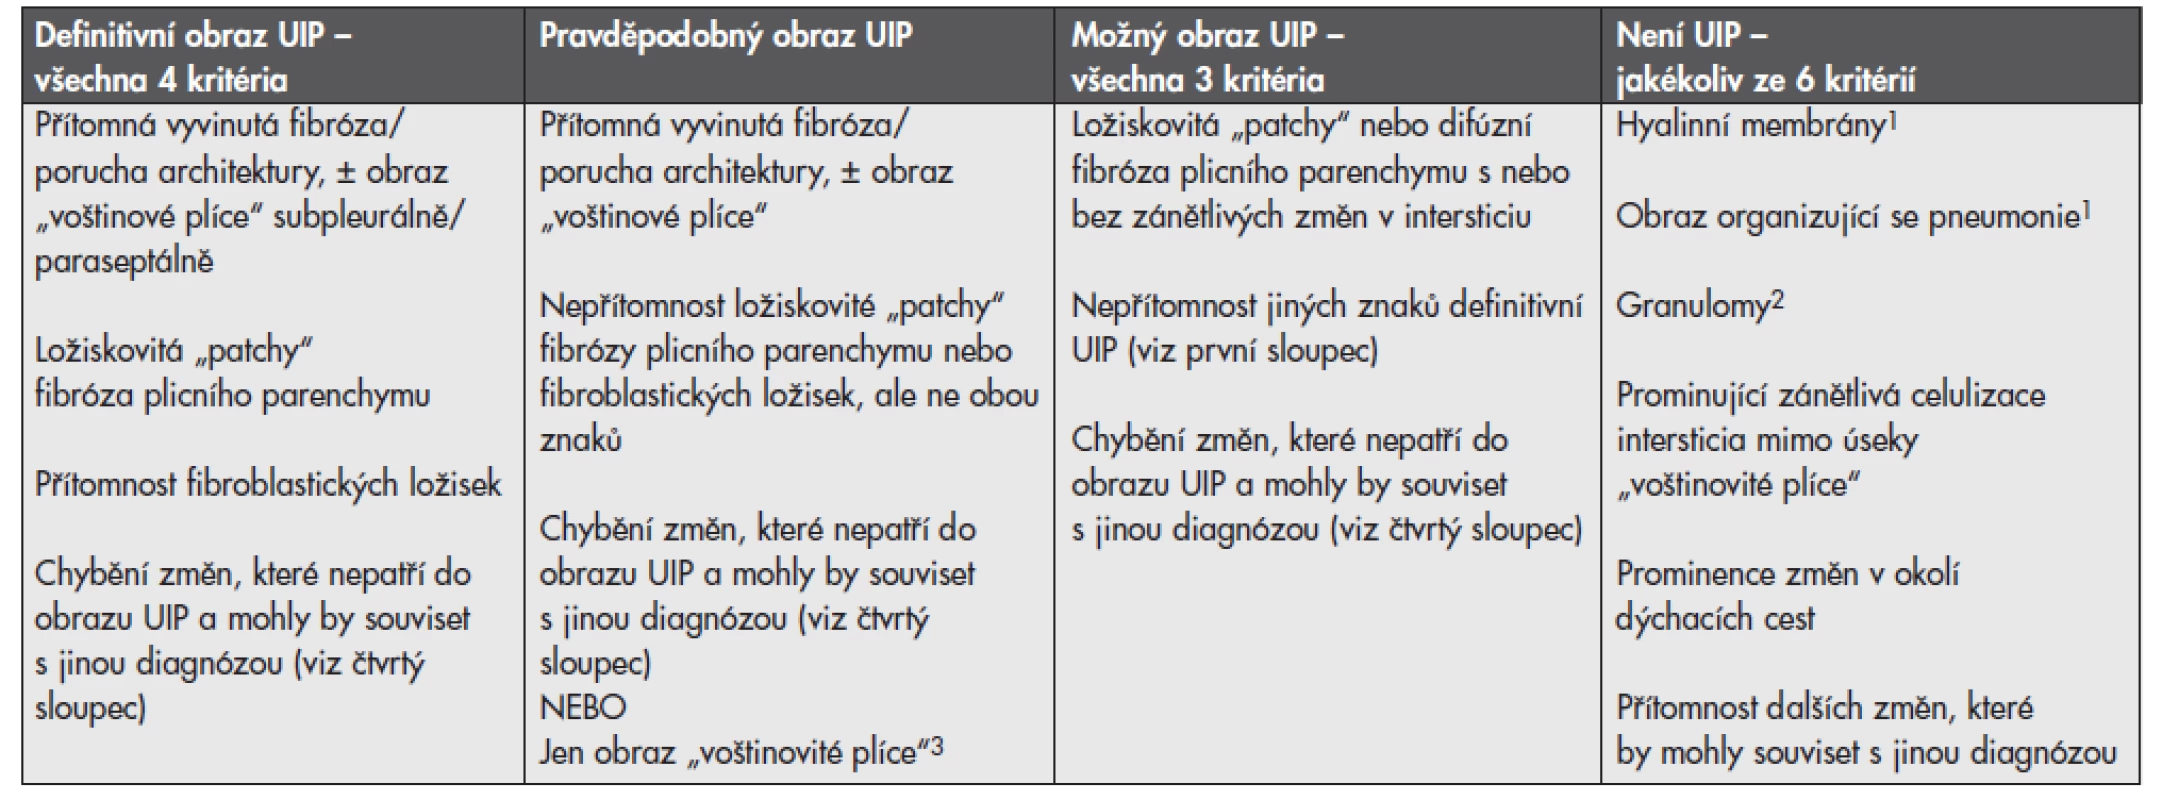 Histopatologická kritéria pro UIP